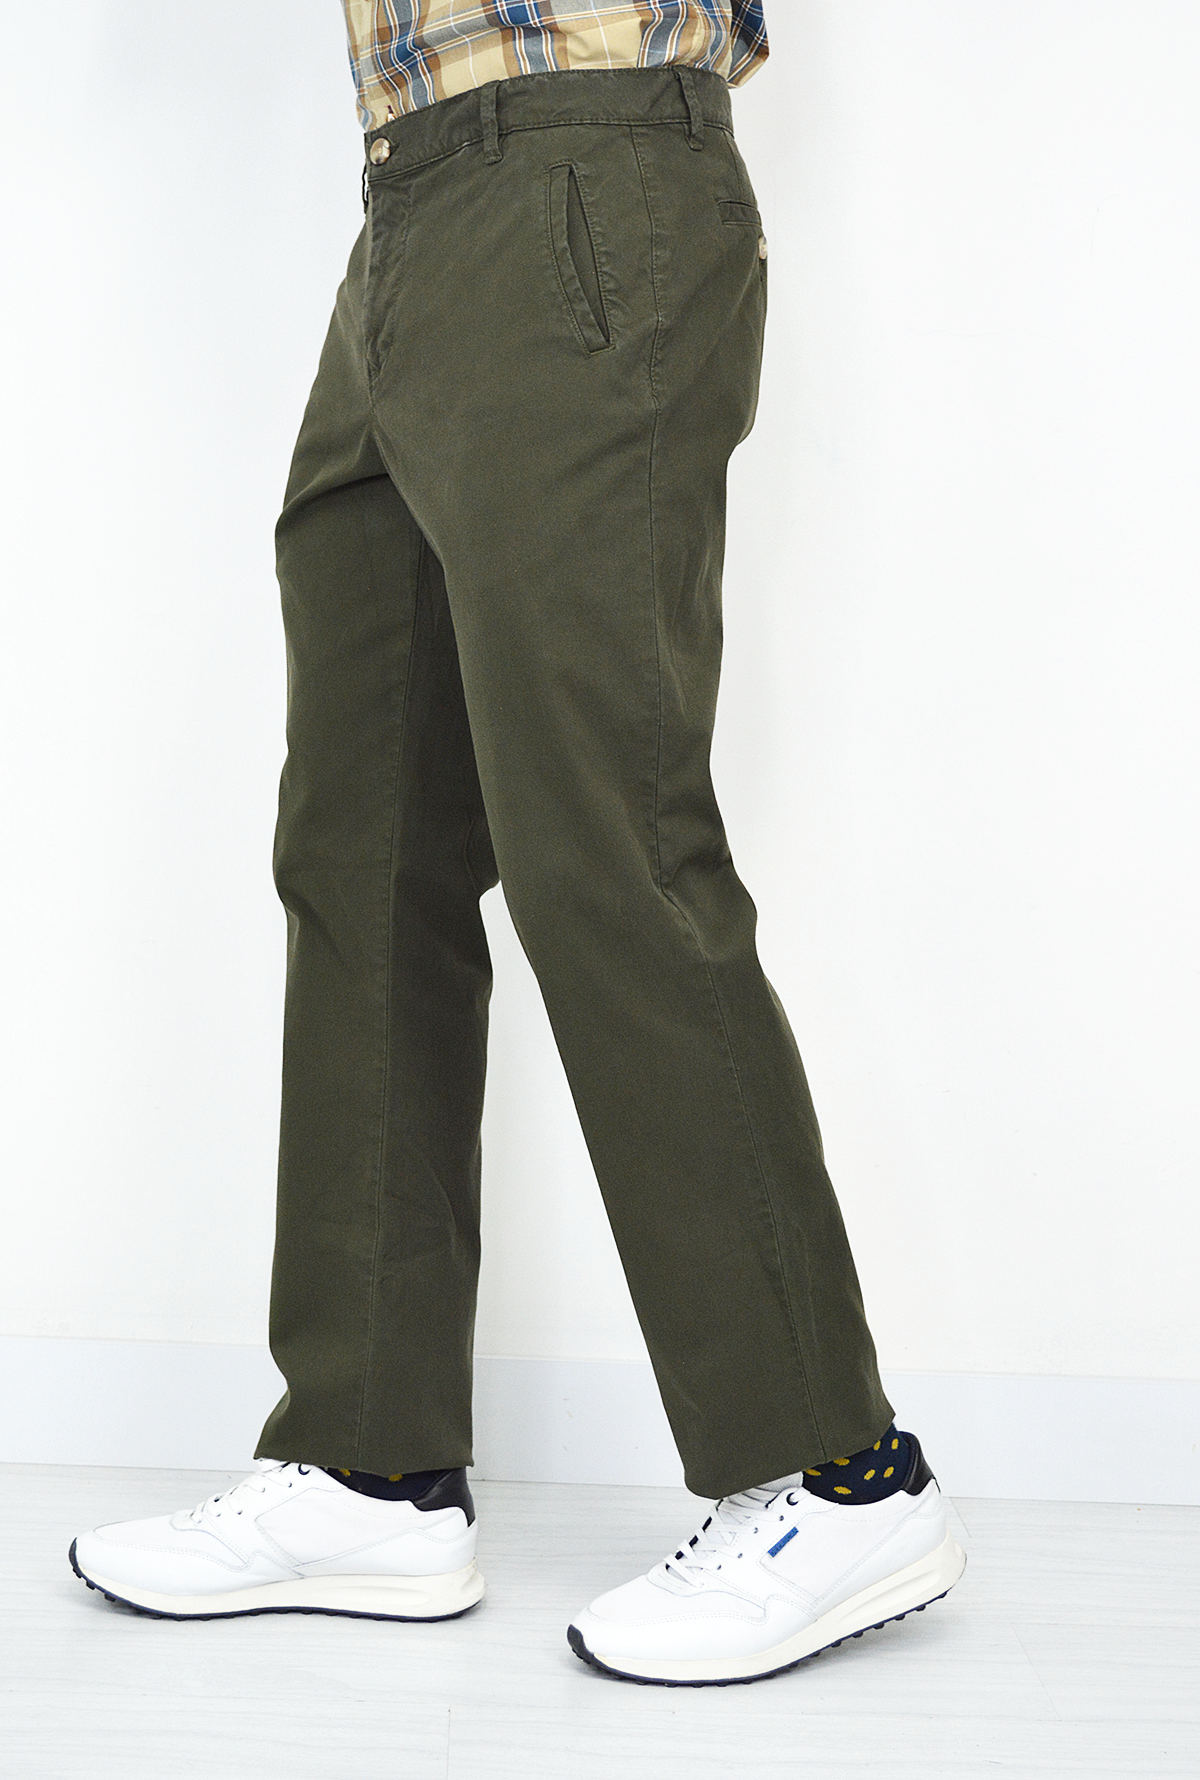 Pantalón Verde Militar Para Hombre DPC1029